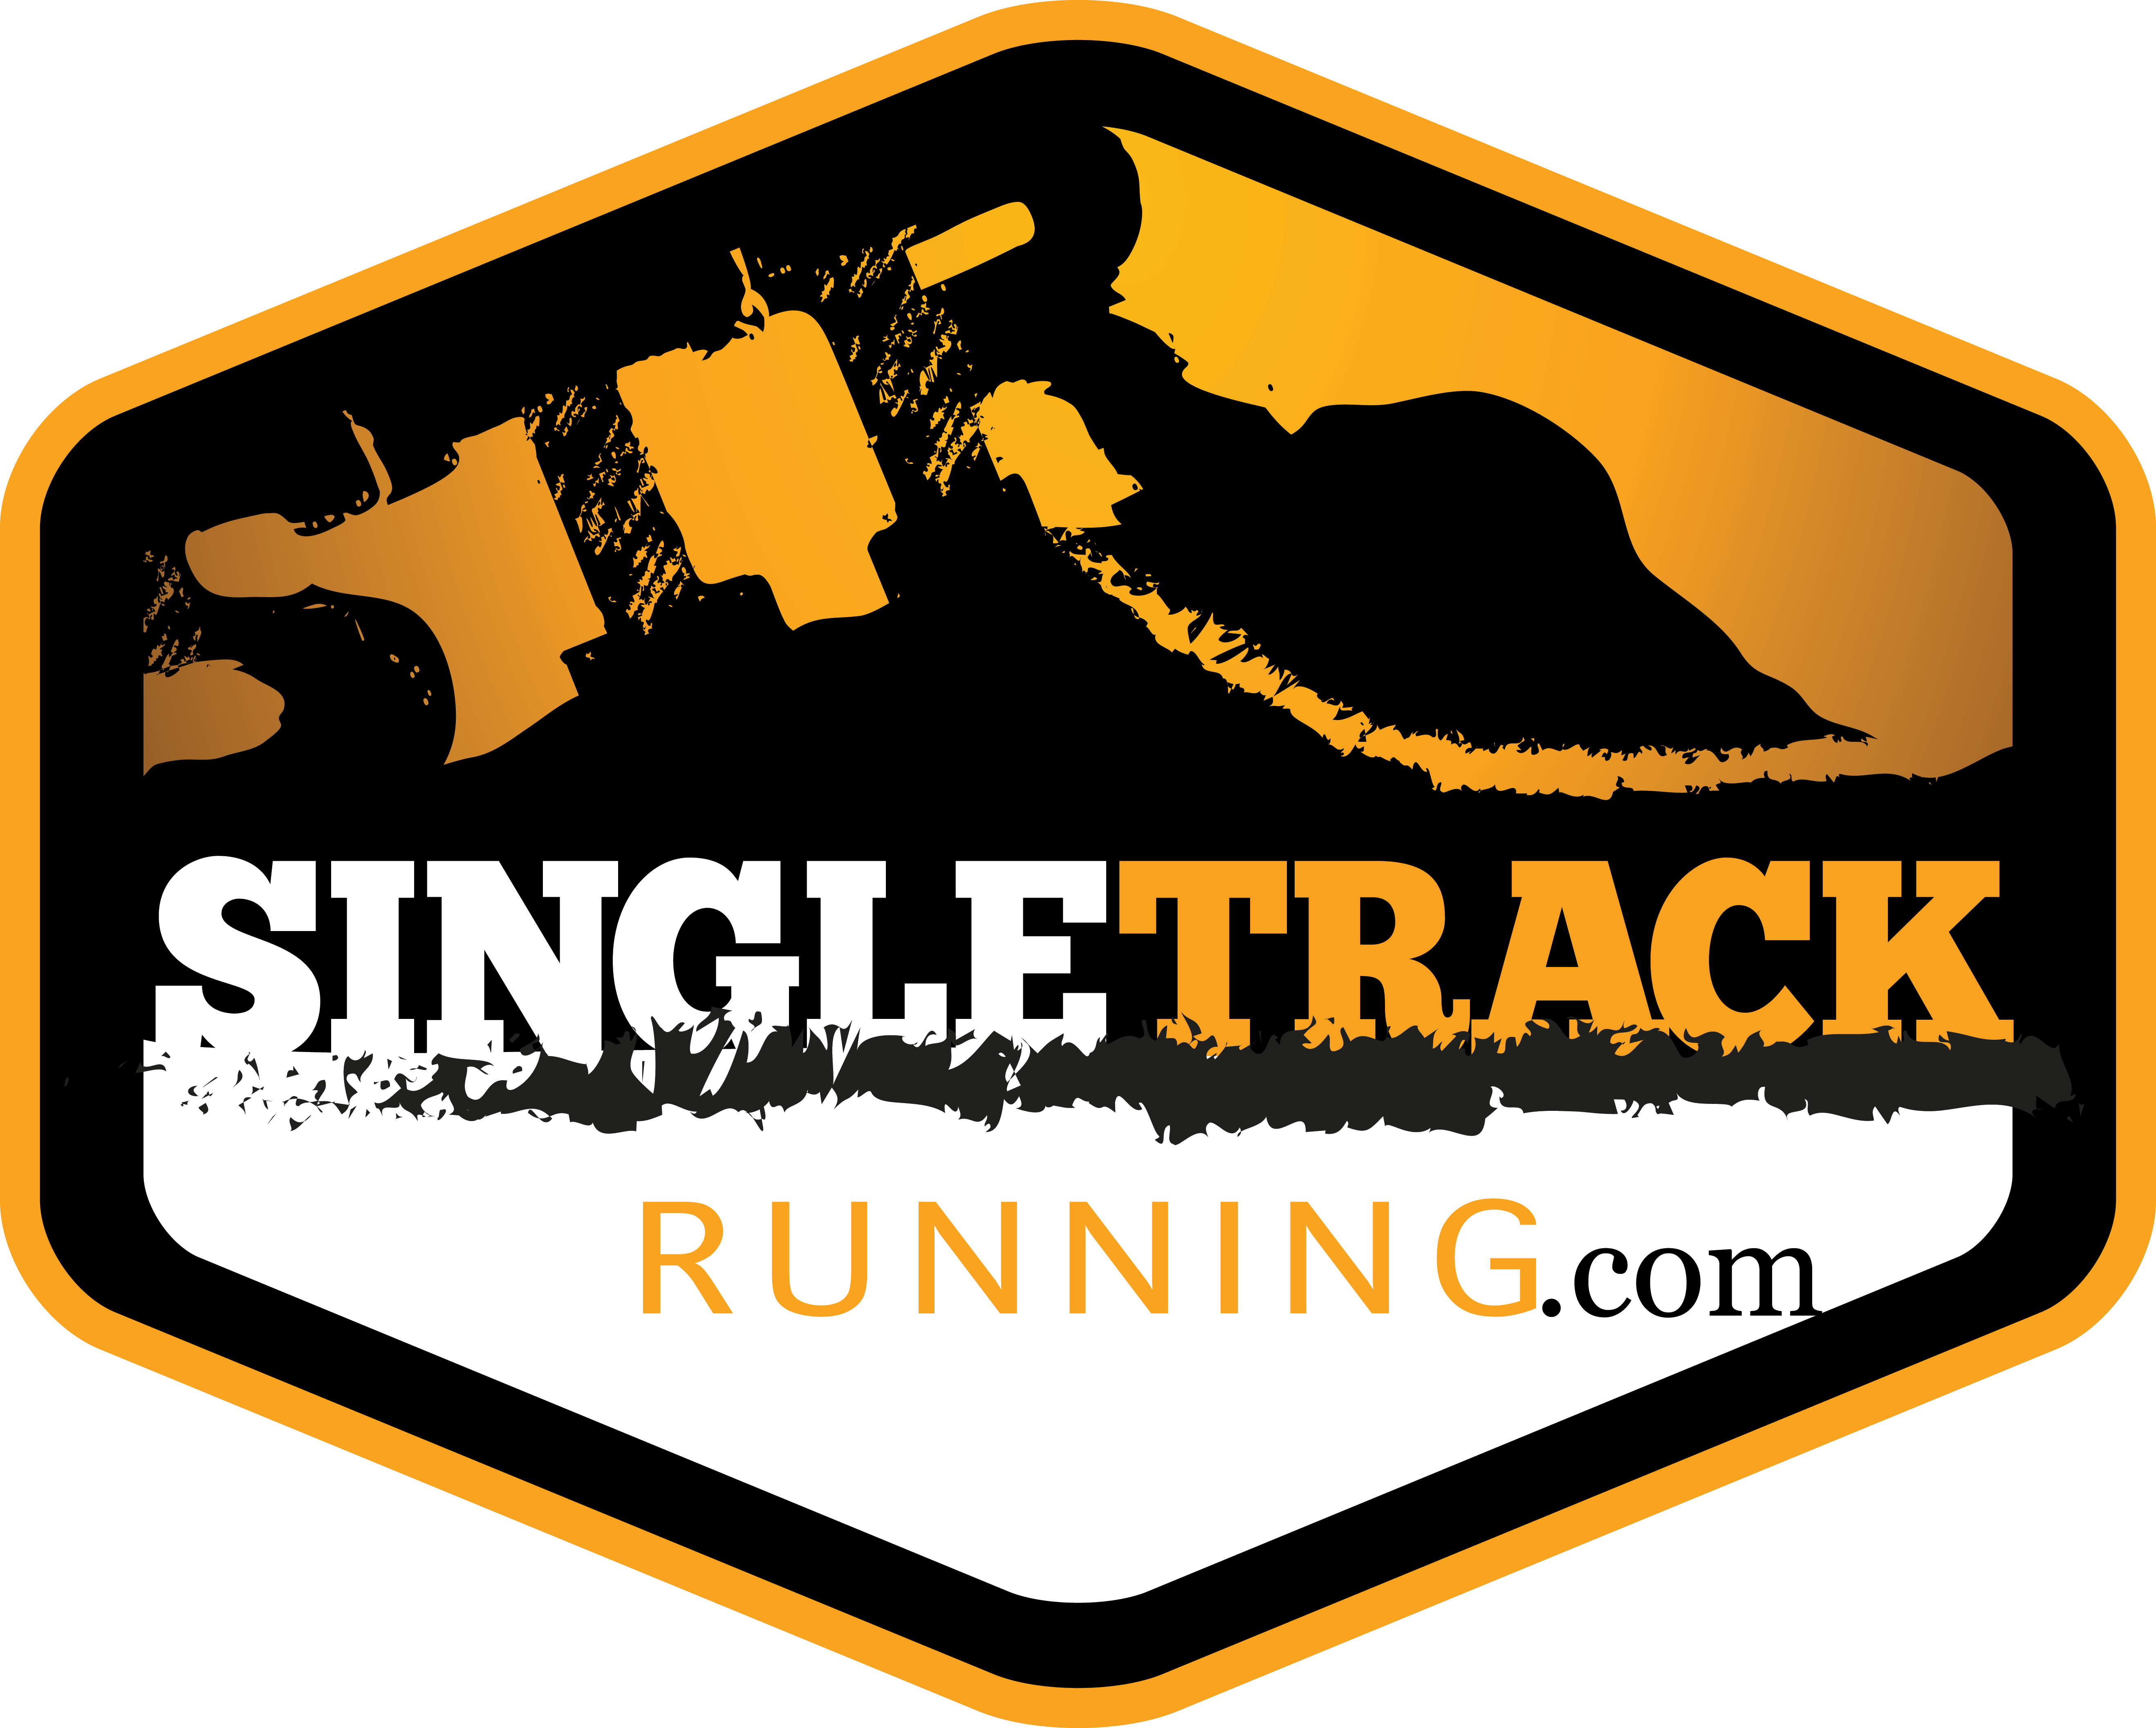 SingleTrack Running